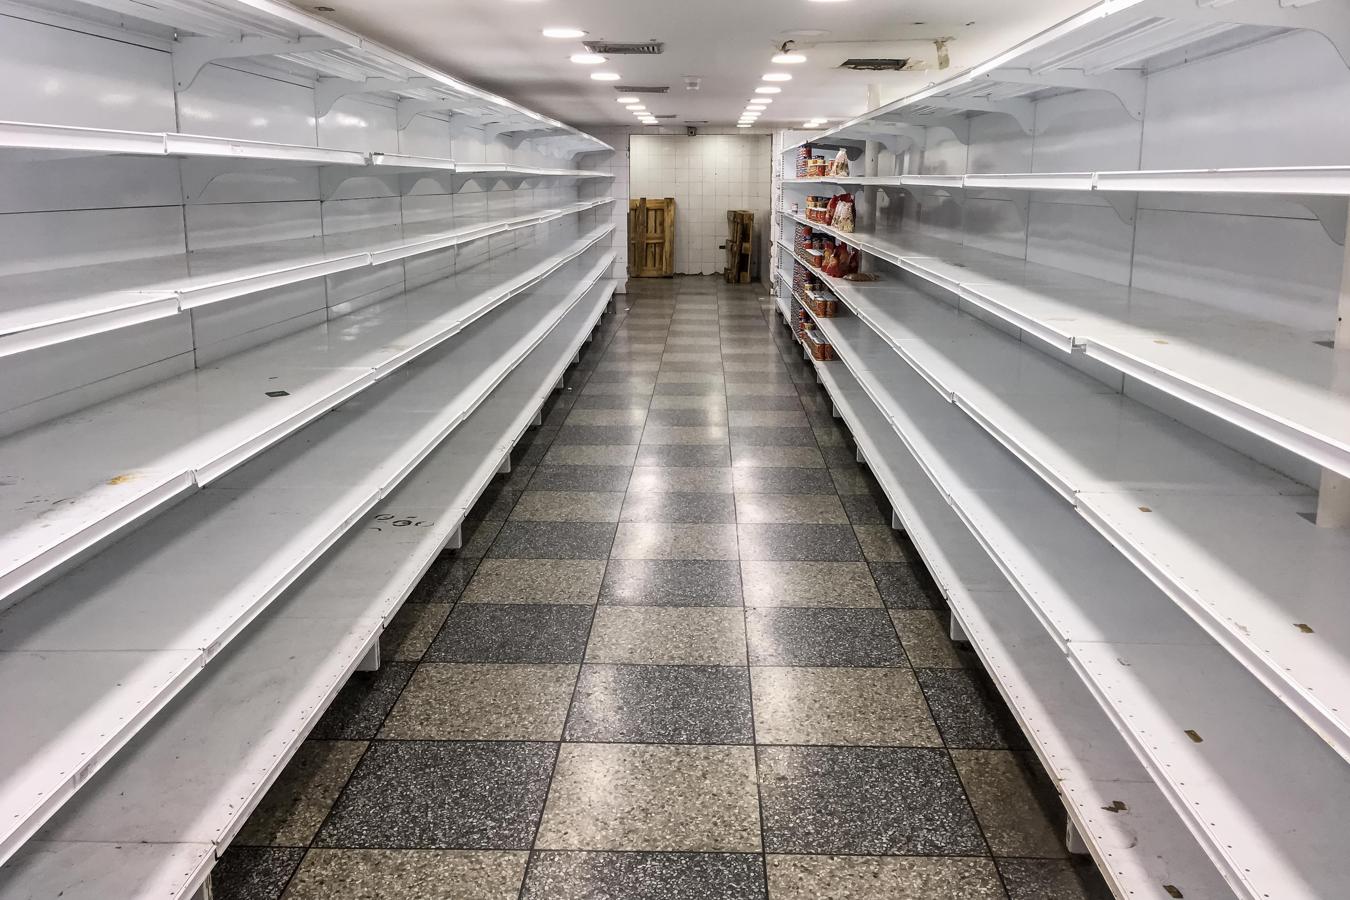 Dos semanas después de la puesta en marcha del nuevo plan económico de Maduro, la situación en Venezuela es desoladora. Las estanterías de supermercados y farmacias están vacías y cientos de trabajadores pierden sus empleos. Familias enteras de venezolanos huyen de la escasez, la inflación y la inseguridad de su tierra natal. Bolivia, Colombia, Ecuador y Perú tratan de acogerlos. Hasta el alto comisionado de la ONU para los derechos humanos, Zeid Raad al-Hussein, considera que «es difícil pensar que Venezuela es un país democrático».